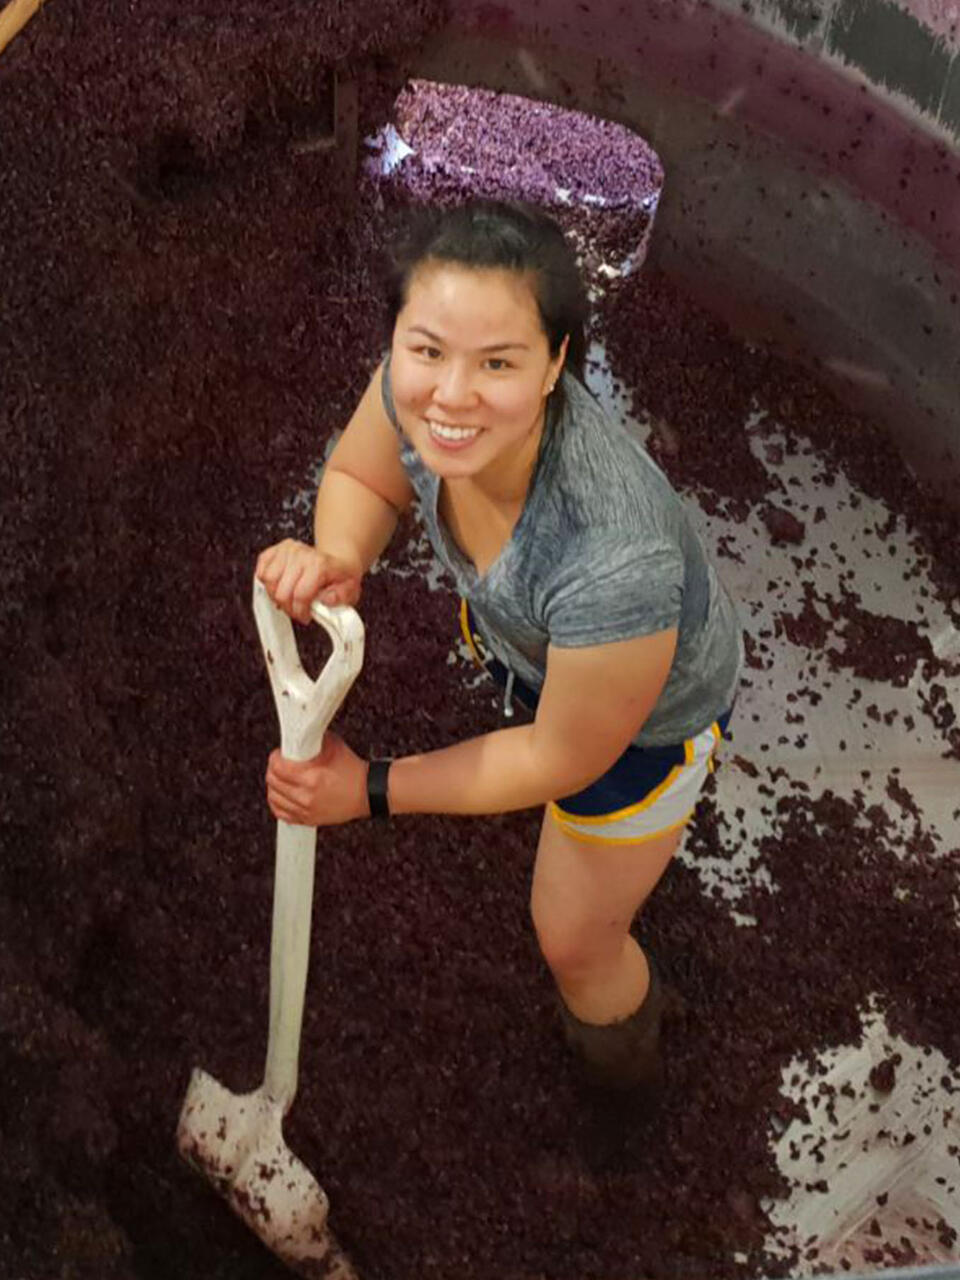 Worker with a shovel inside a vat, shoveling grapes